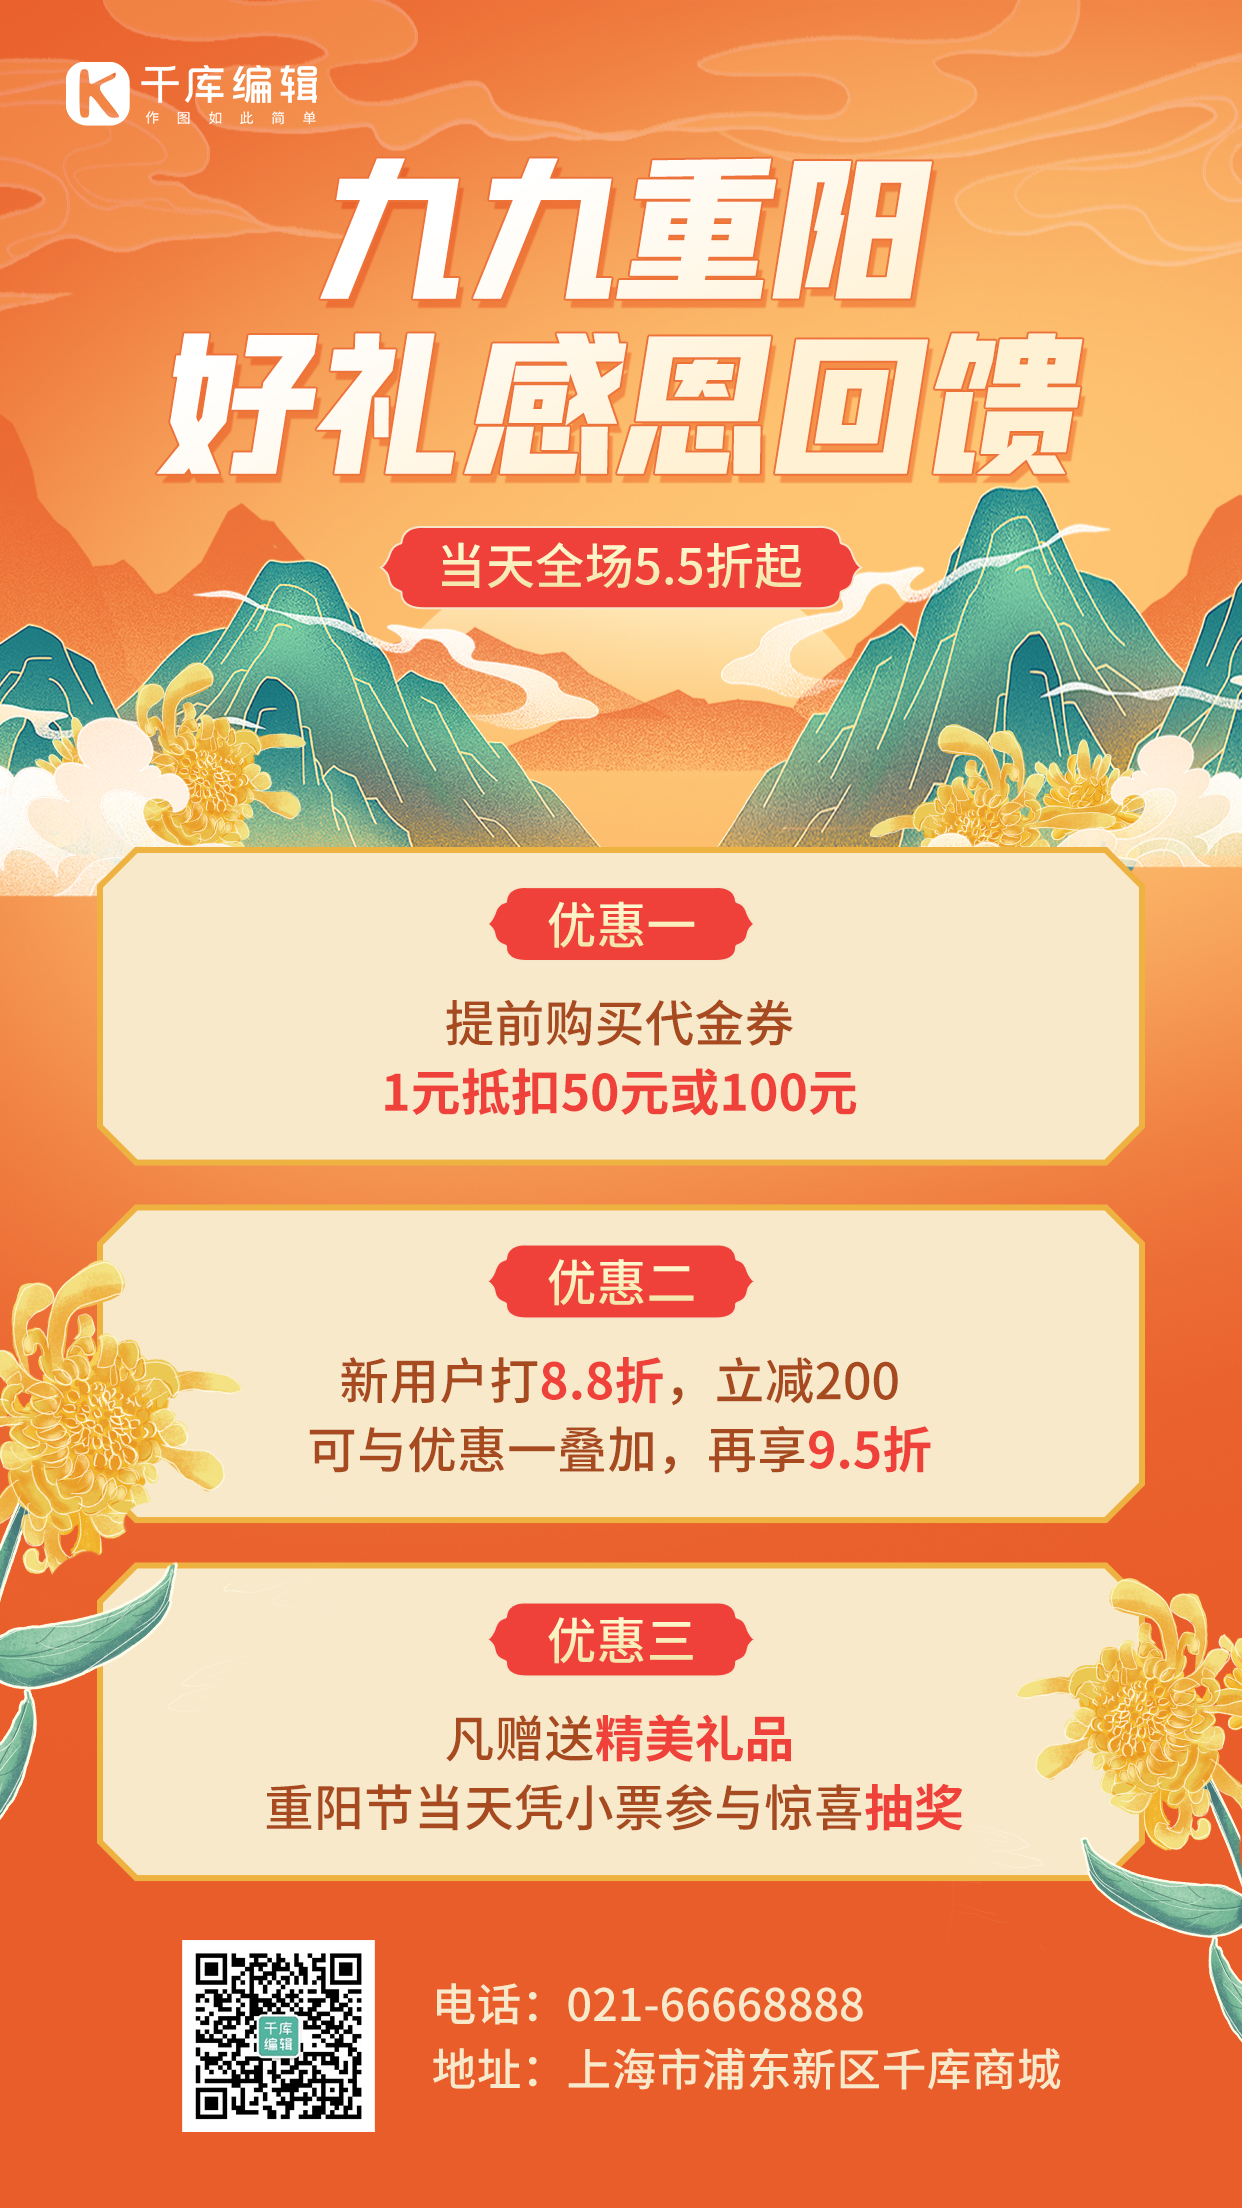 重阳节感恩回馈活动促销橙色中国风手机海报图片